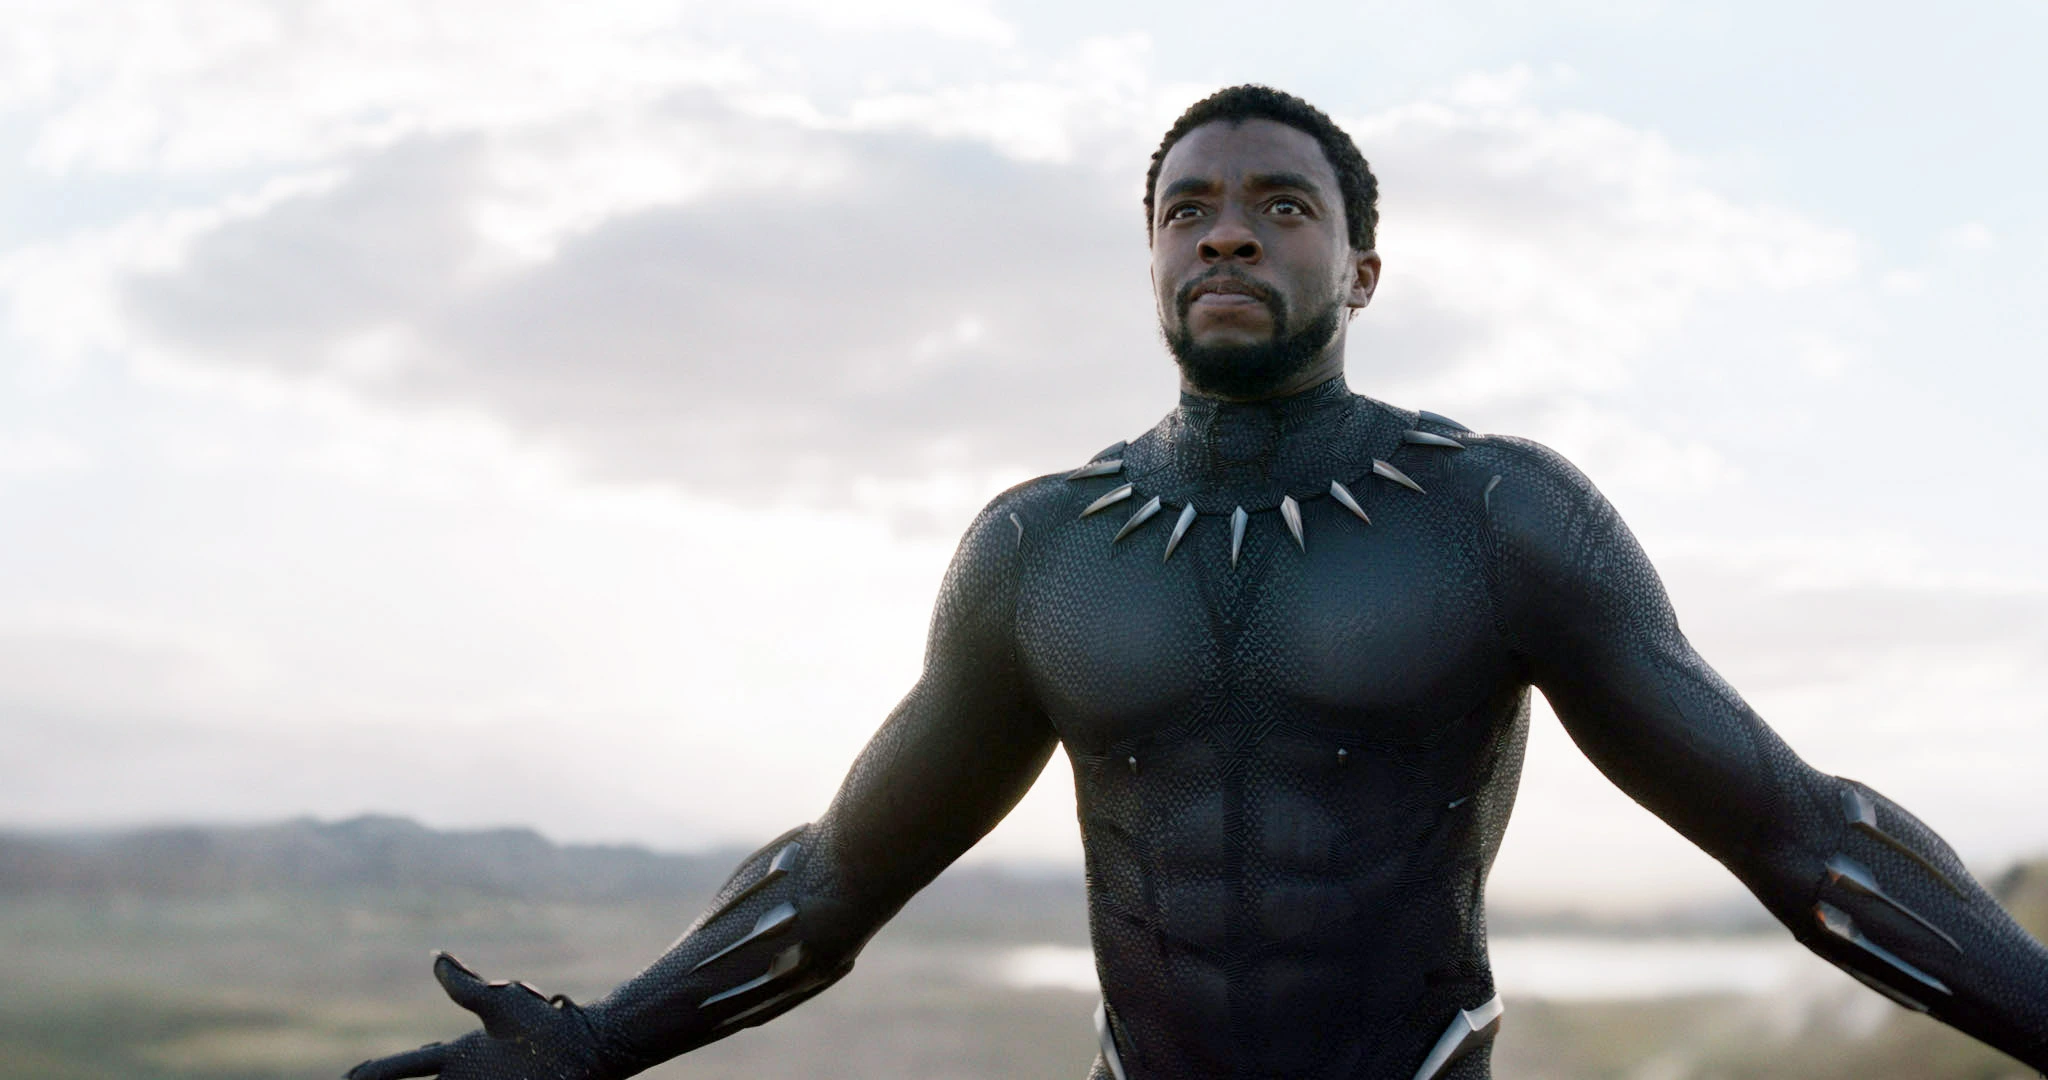 مراجعة فيلم Black Panther Wakanda Forever - تحدي مارفل الصعب التي نجحت فيه وبإقتدار 1